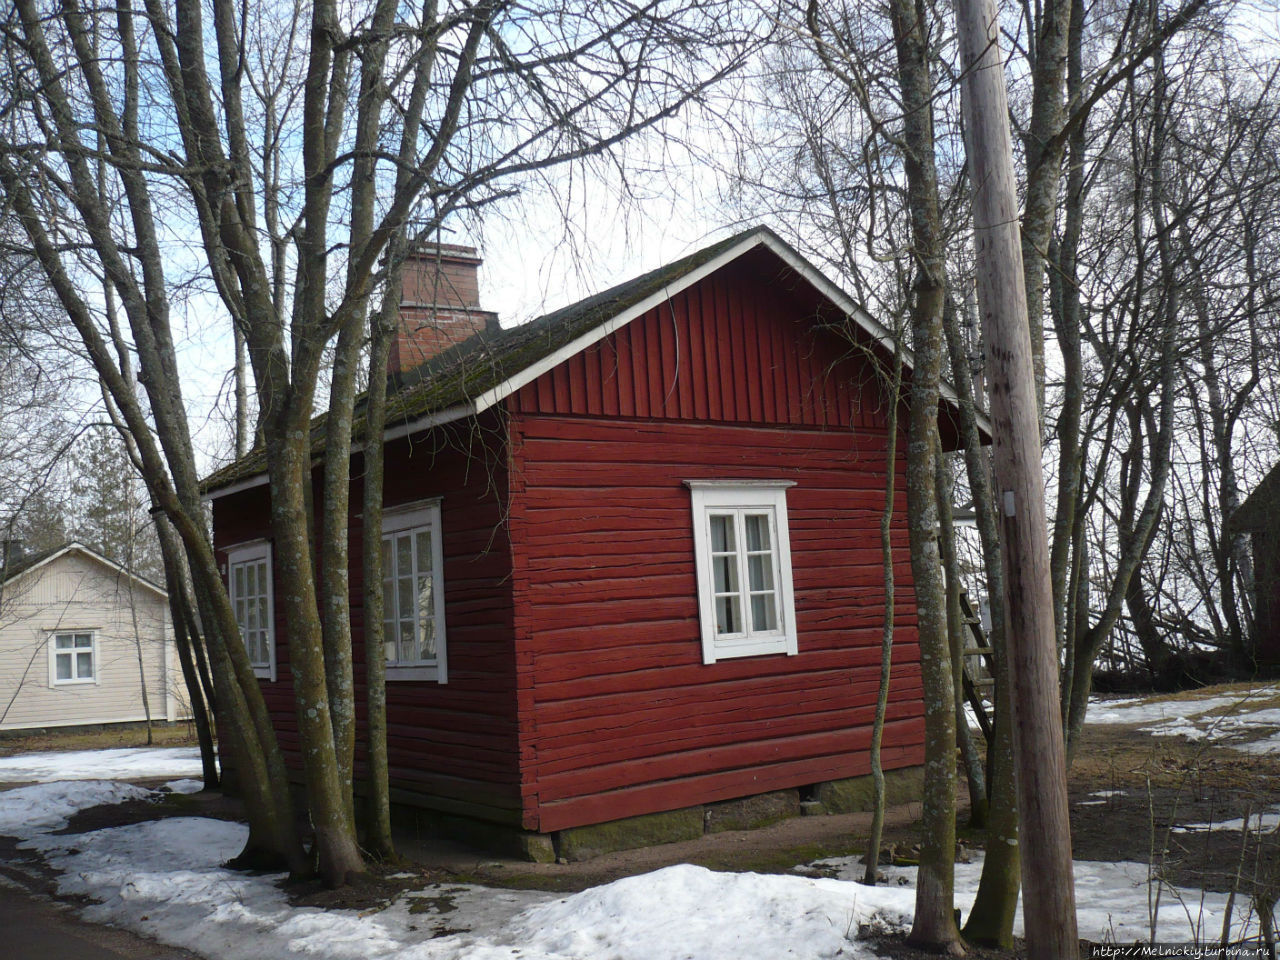 Музейный квартал «Кауниснурми» Коувола, Финляндия